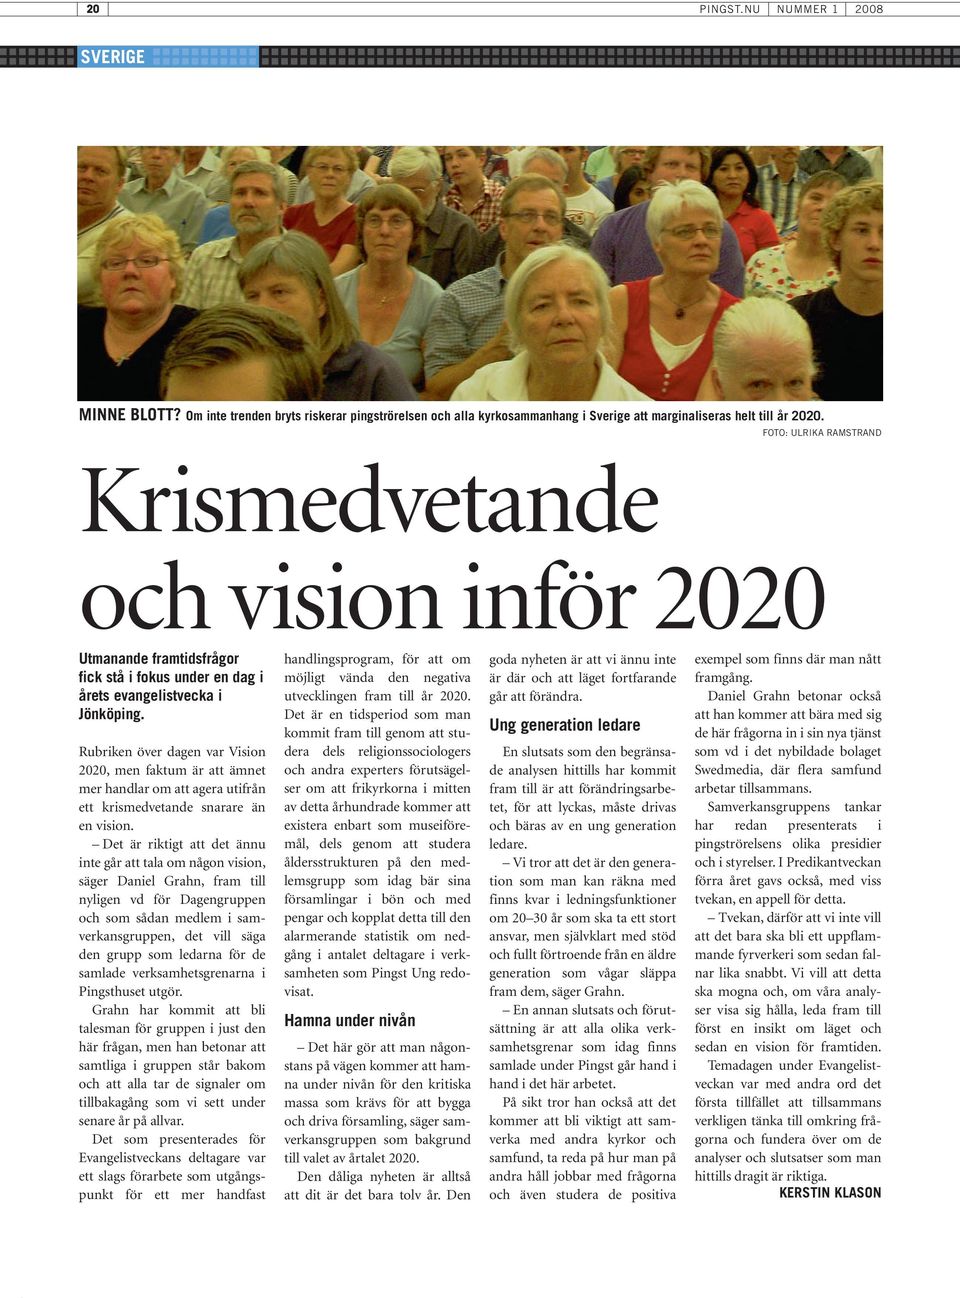 Rubriken över dagen var Vision 2020, men faktum är att ämnet mer handlar om att agera utifrån ett krismedvetande snarare än en vision.